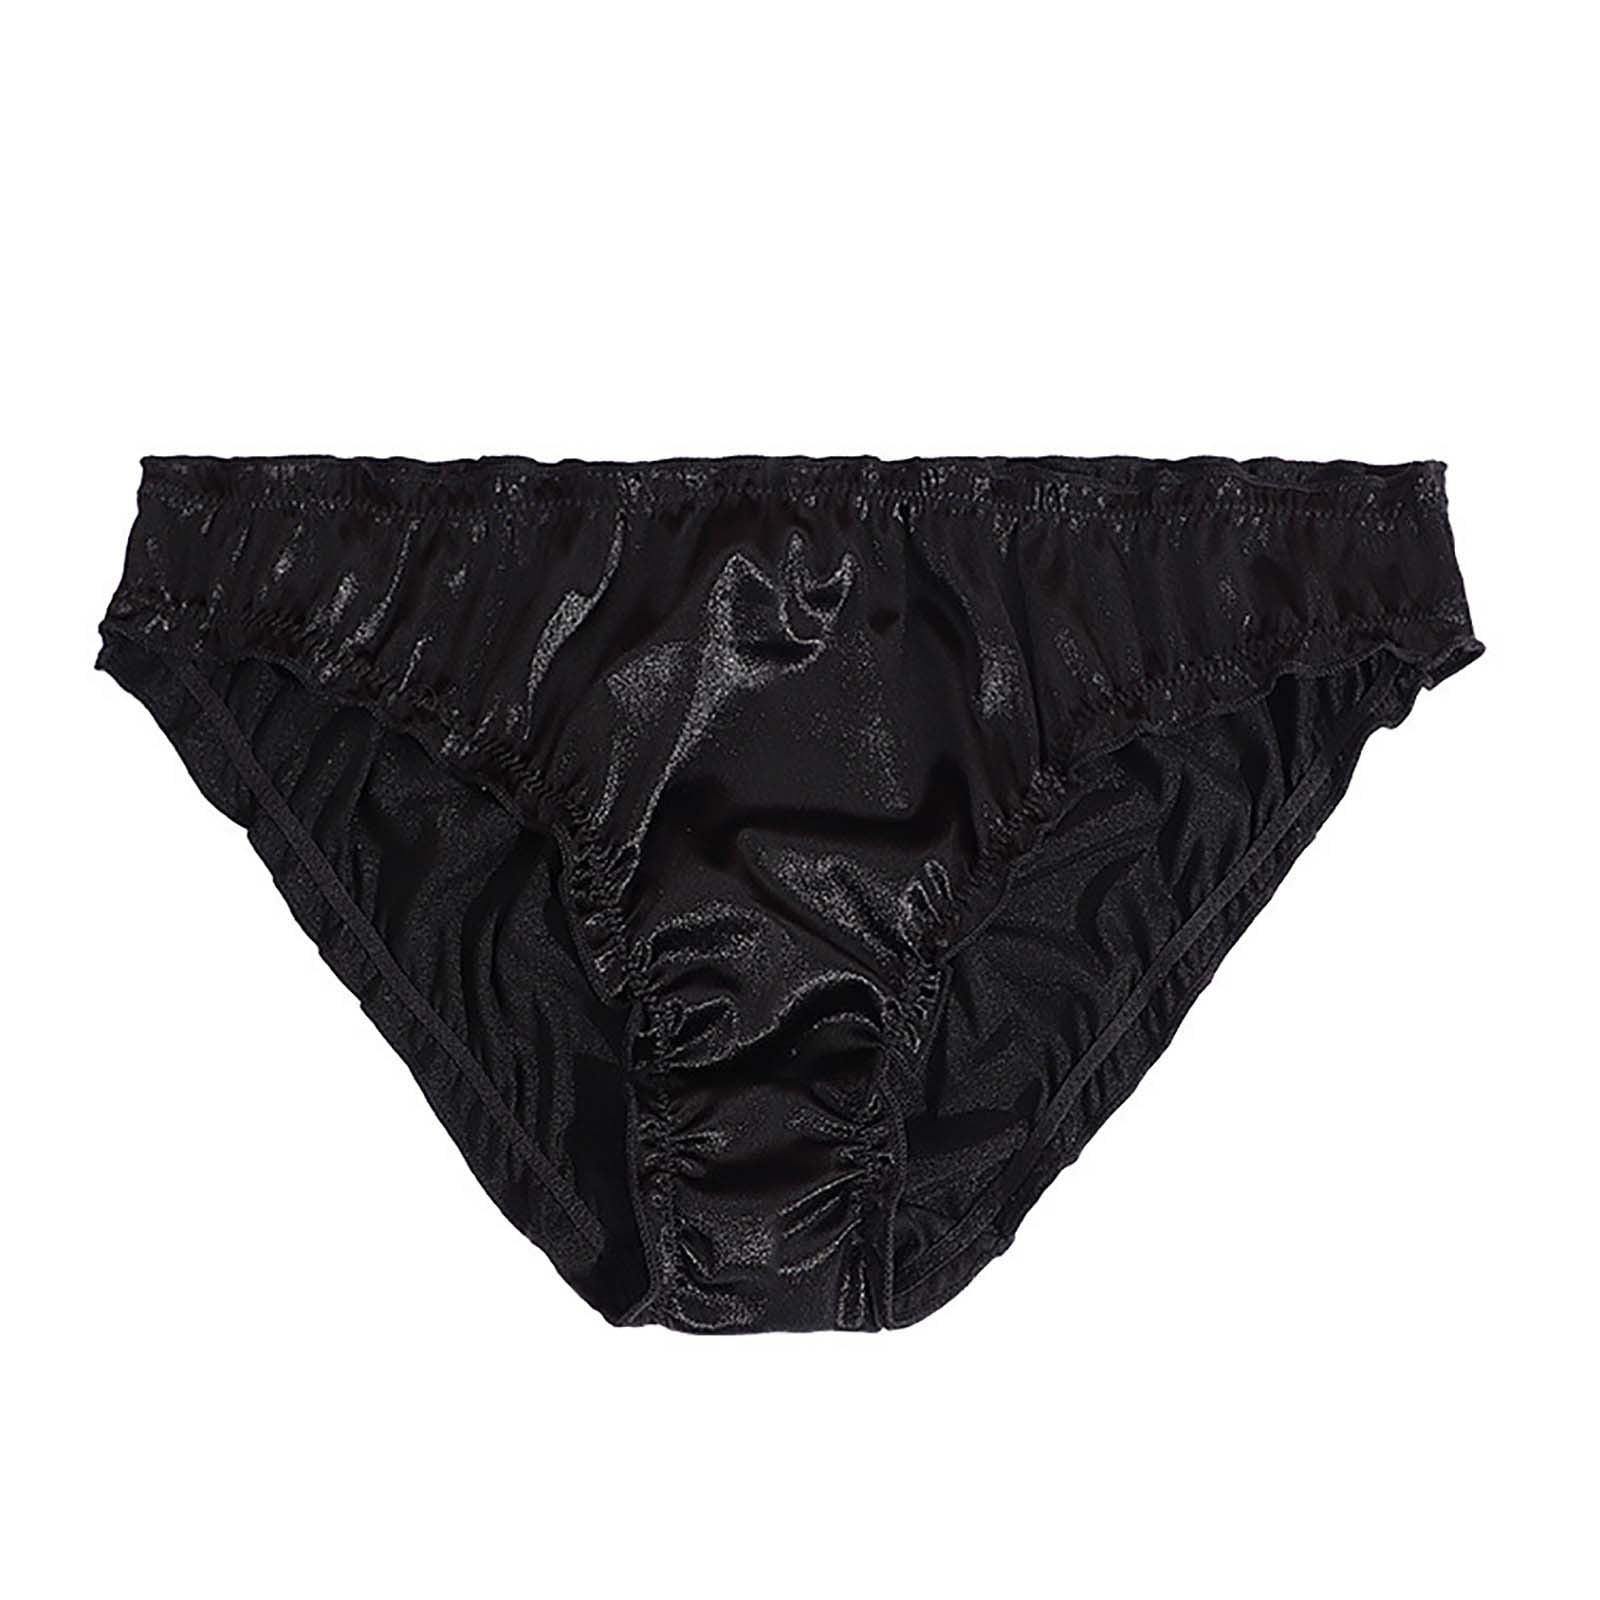 6 12 PRETTY SATIN BIKINIS Style PANTIES Womens Underwear ELLA #3123N S M L  XL